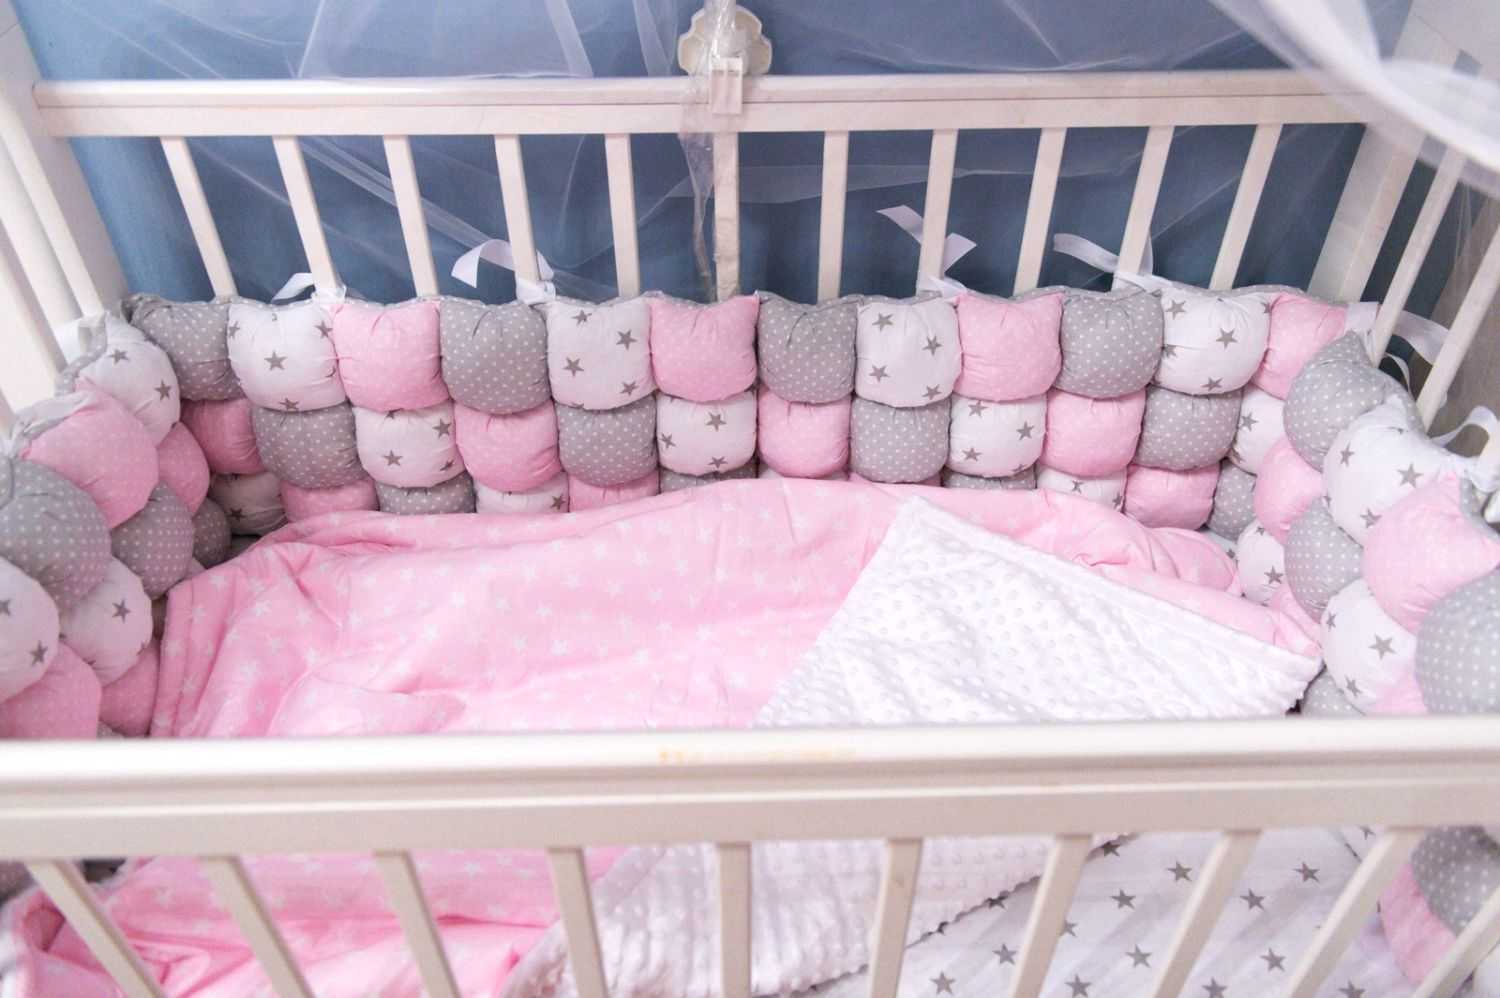 Бортики в кроватку для новорождённых: функции и разновидности, как сшить бамперы своими руками